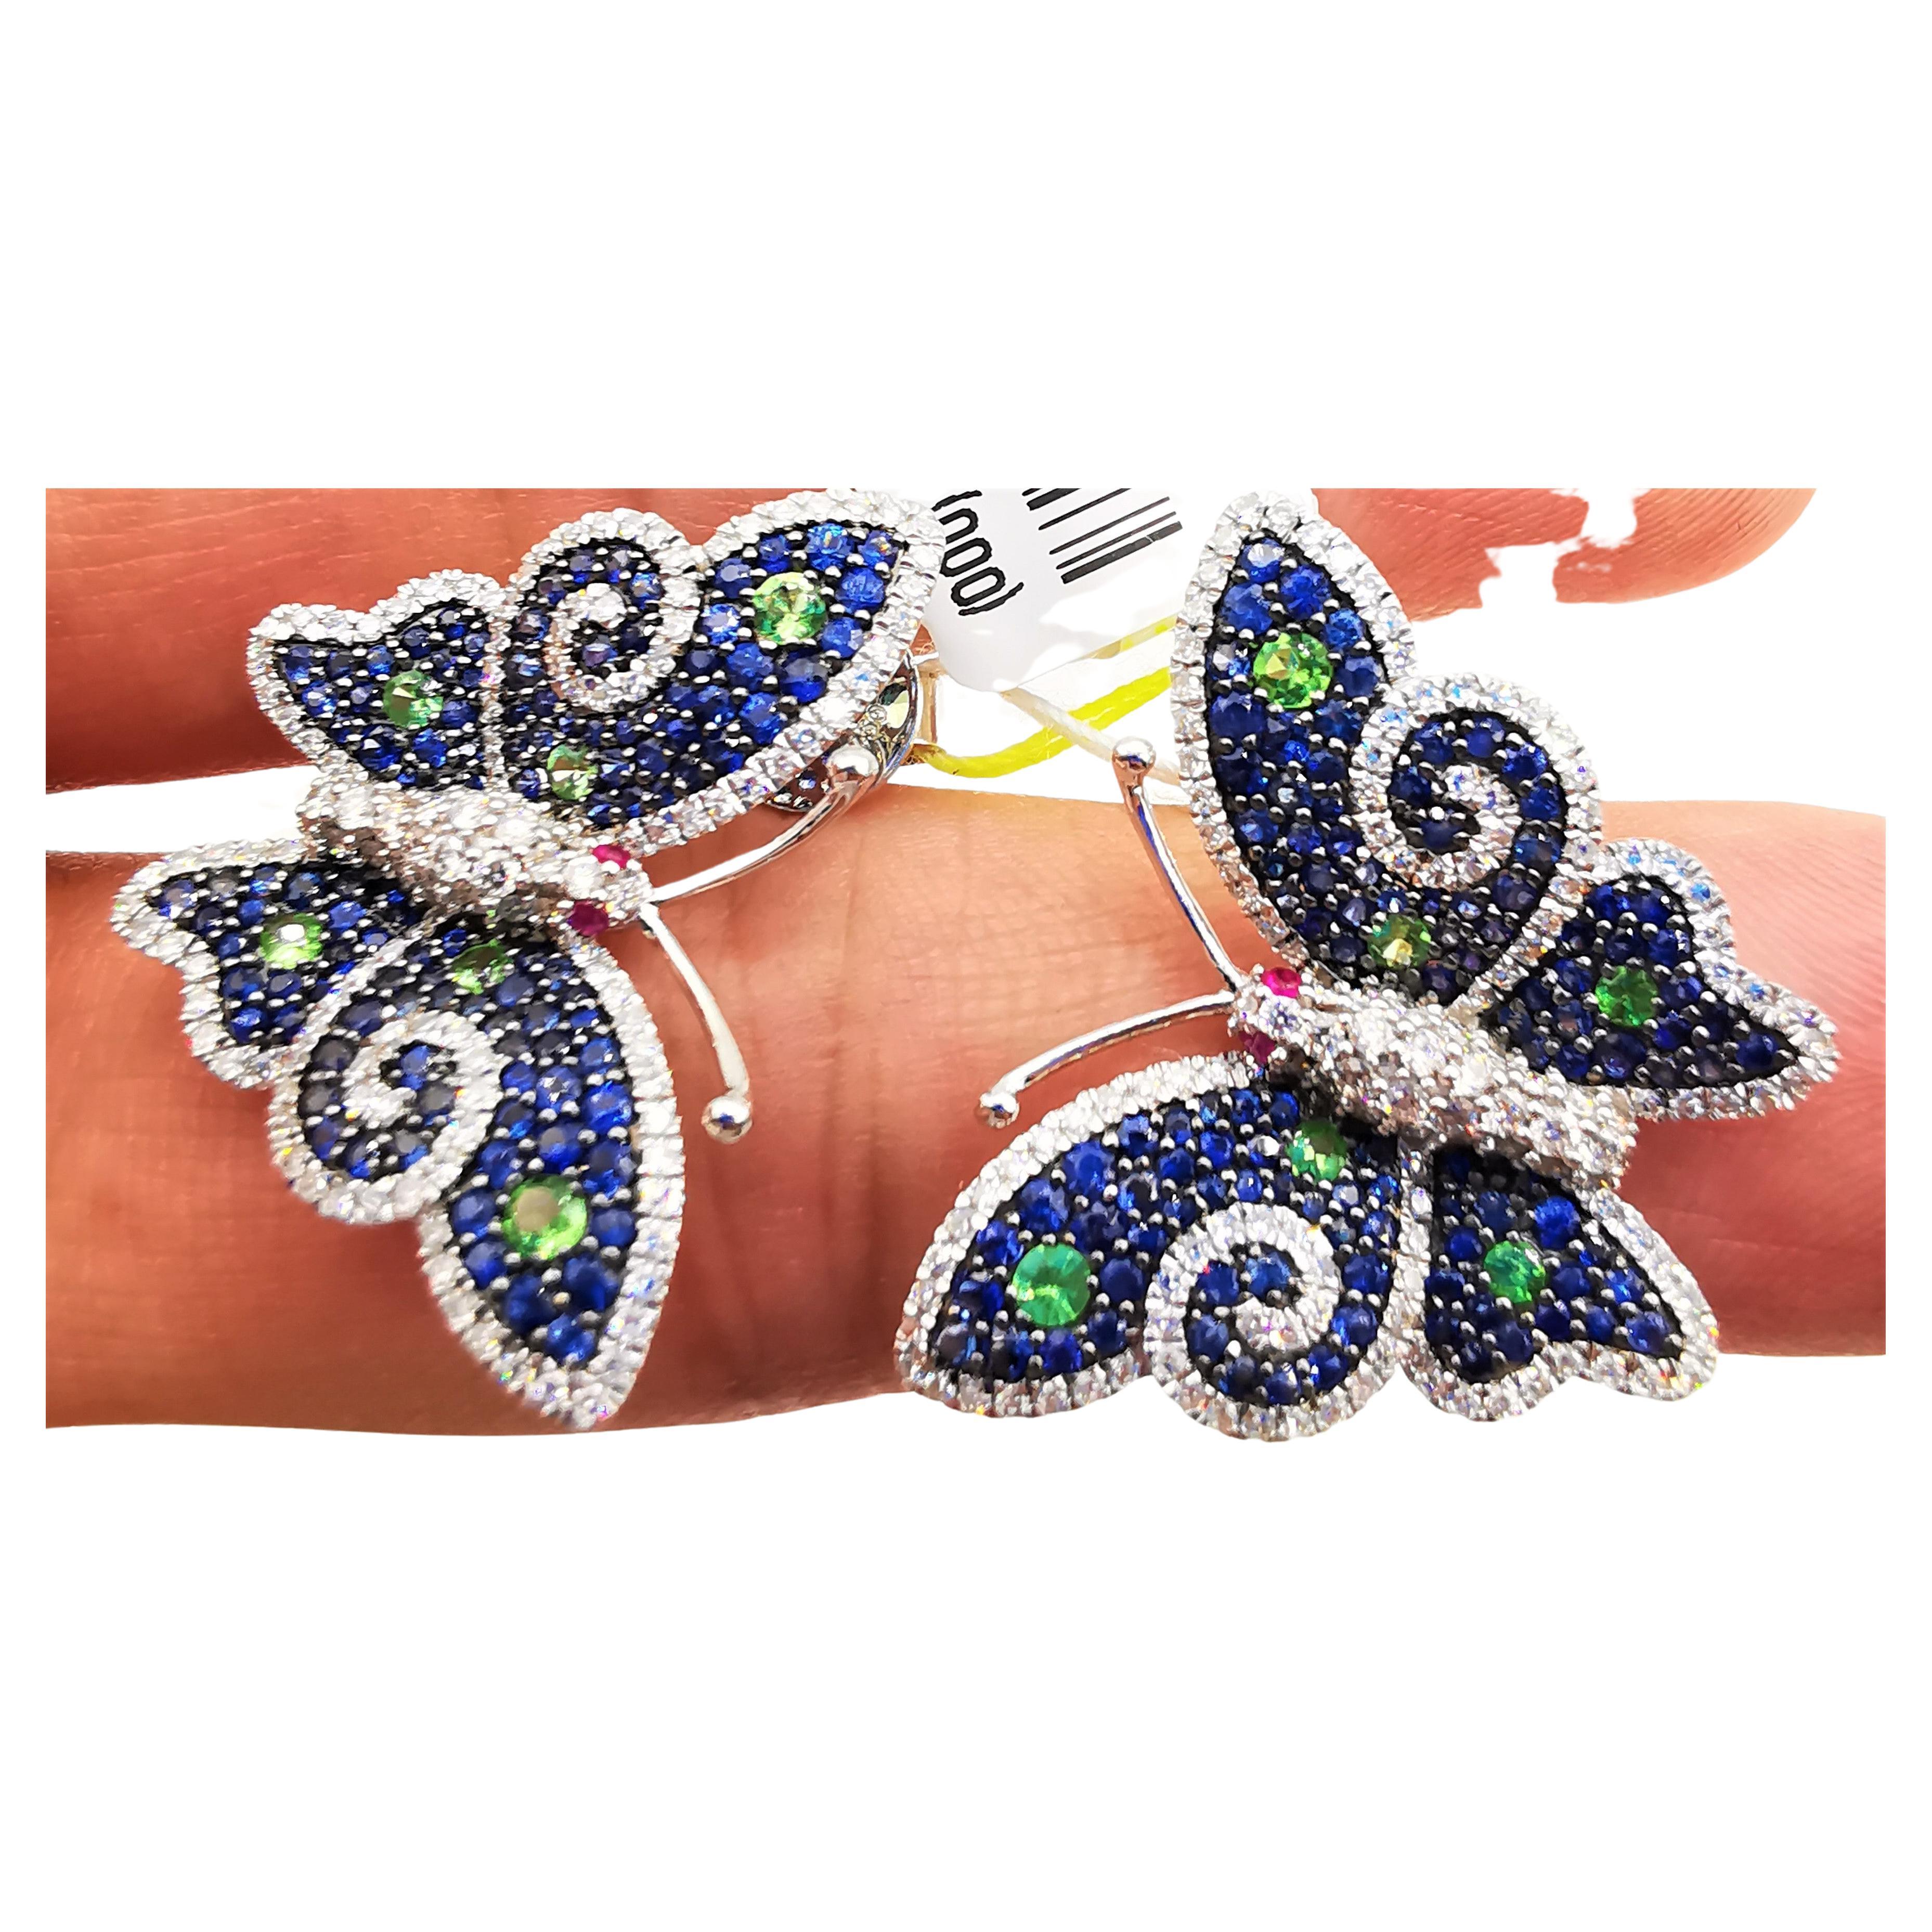 Boucles d'oreilles papillon en or 18 carats avec magnifique saphir bleu, diamants et rubis 9949 carats, neuves avec étiquette